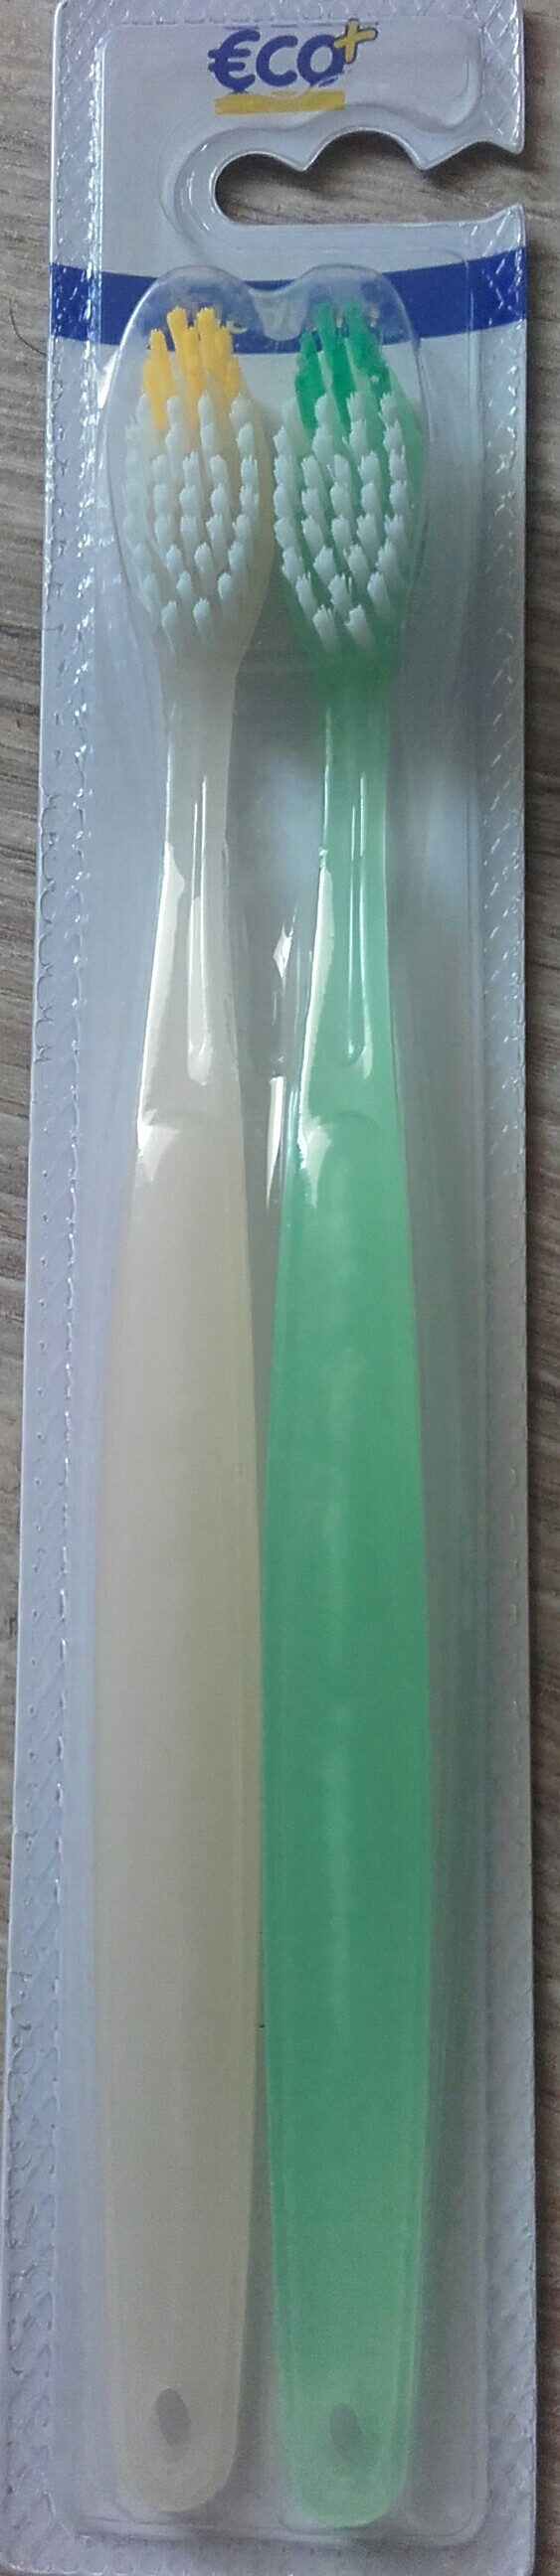 Brosse à  dents médium x2 - Product - fr